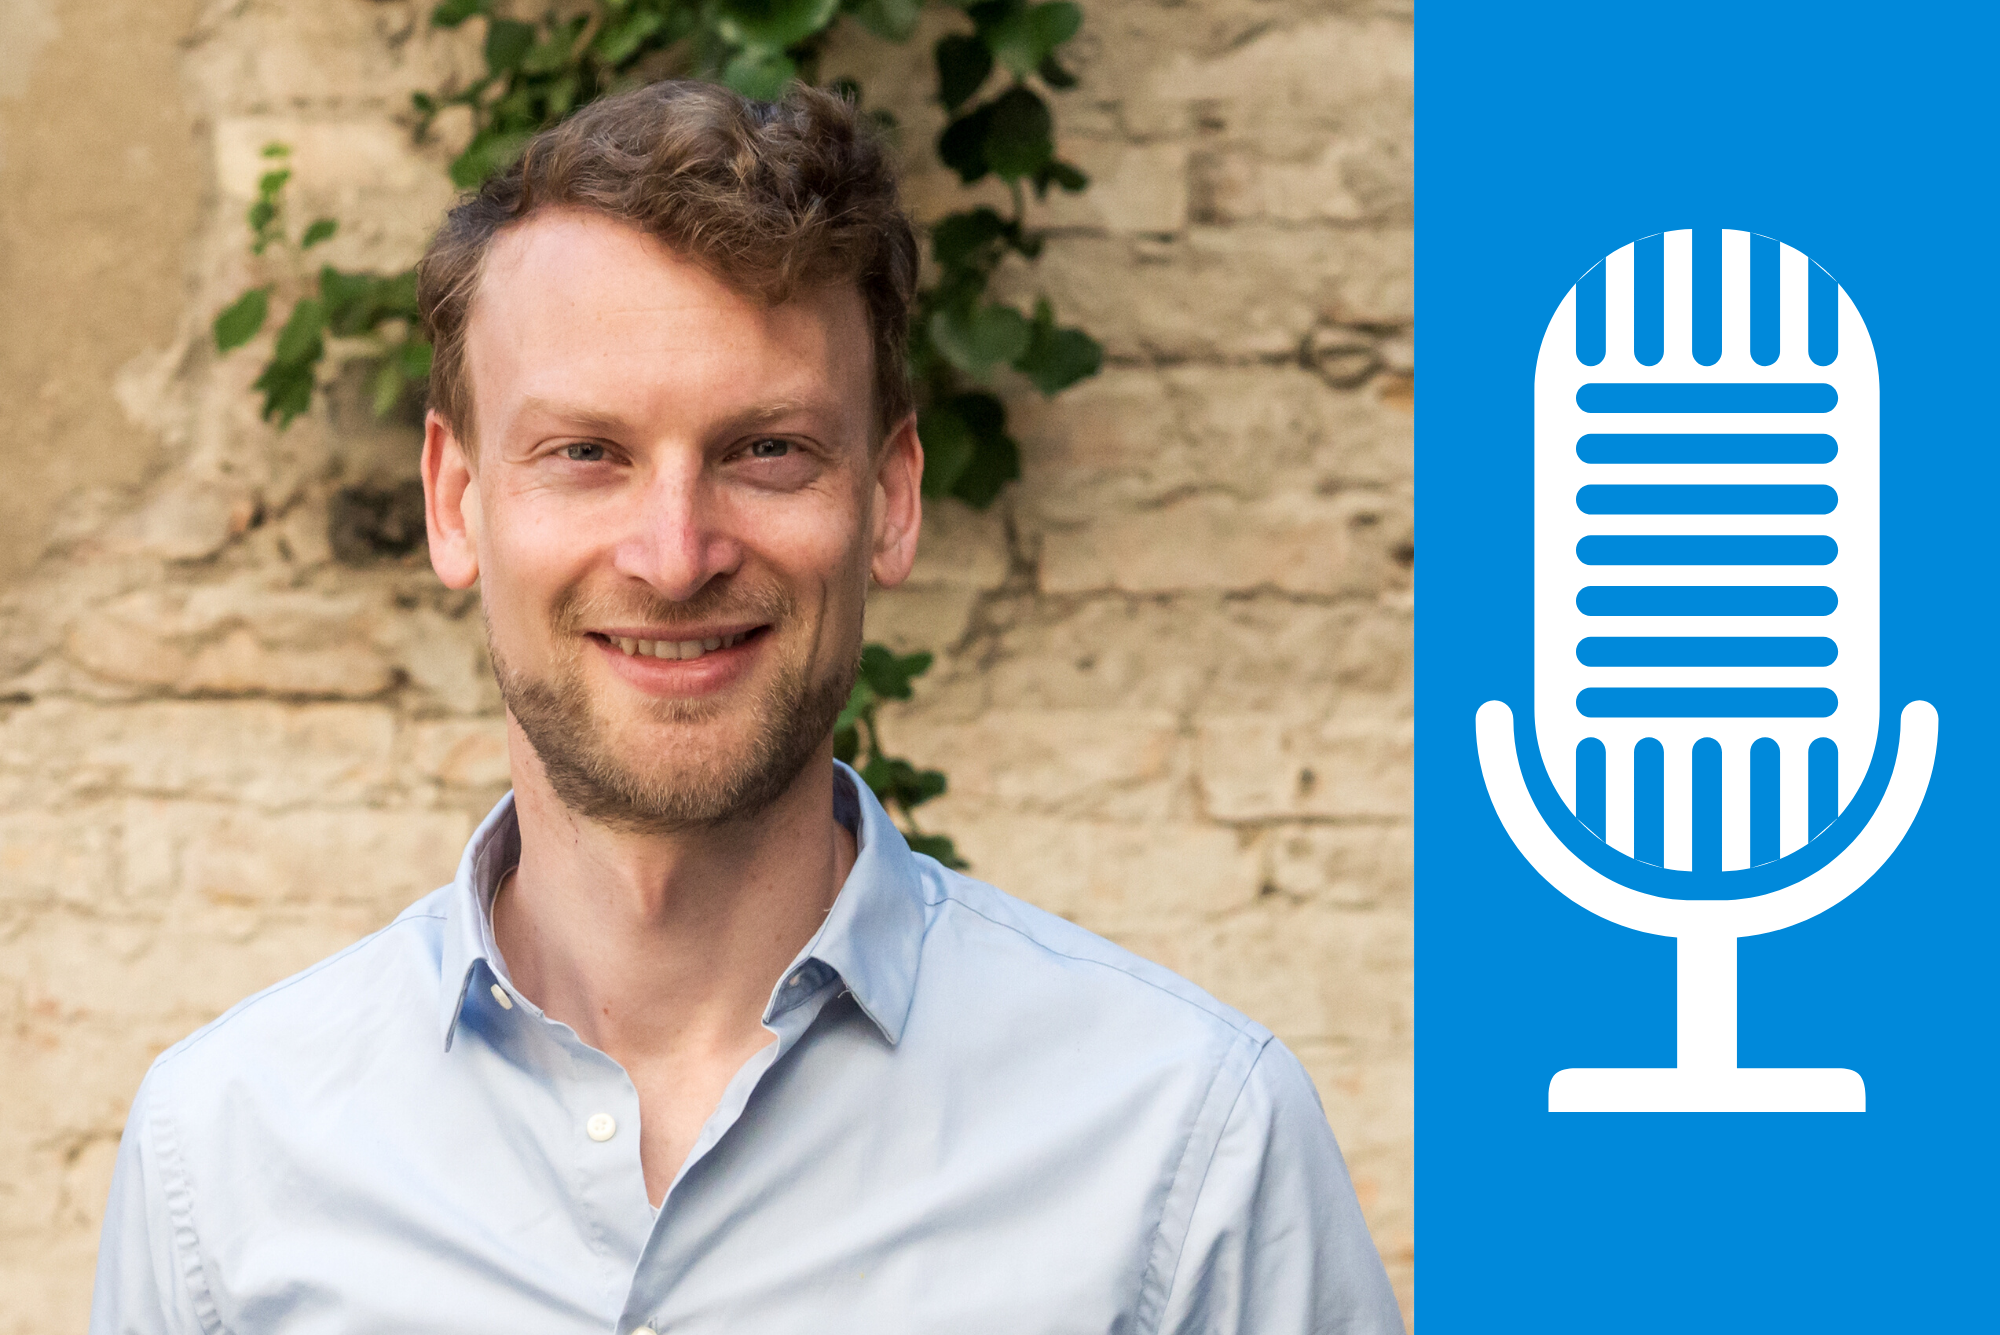 Friedrich Lämmel zu Gast im E-Health Pioneers Podcast